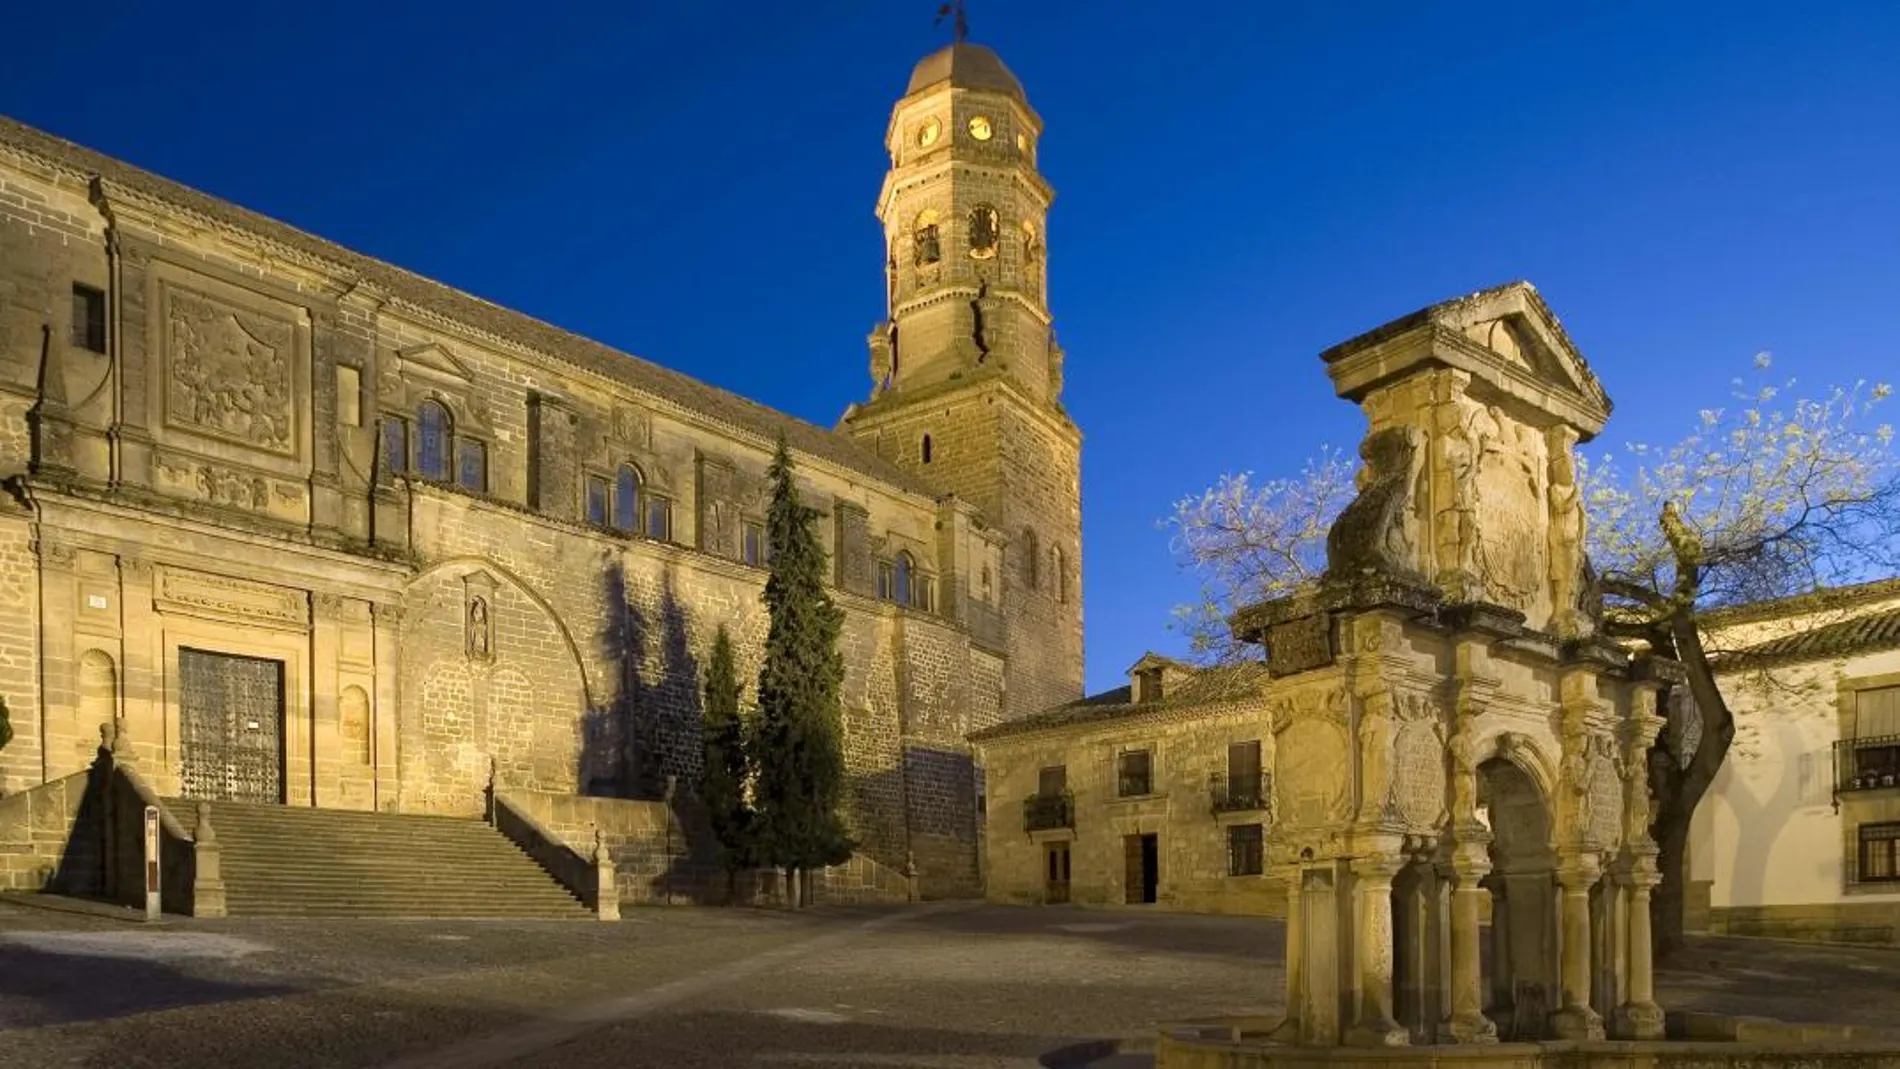 Catedral de Baeza, obra renacentista del arquitecto Andrés de Vandelvira